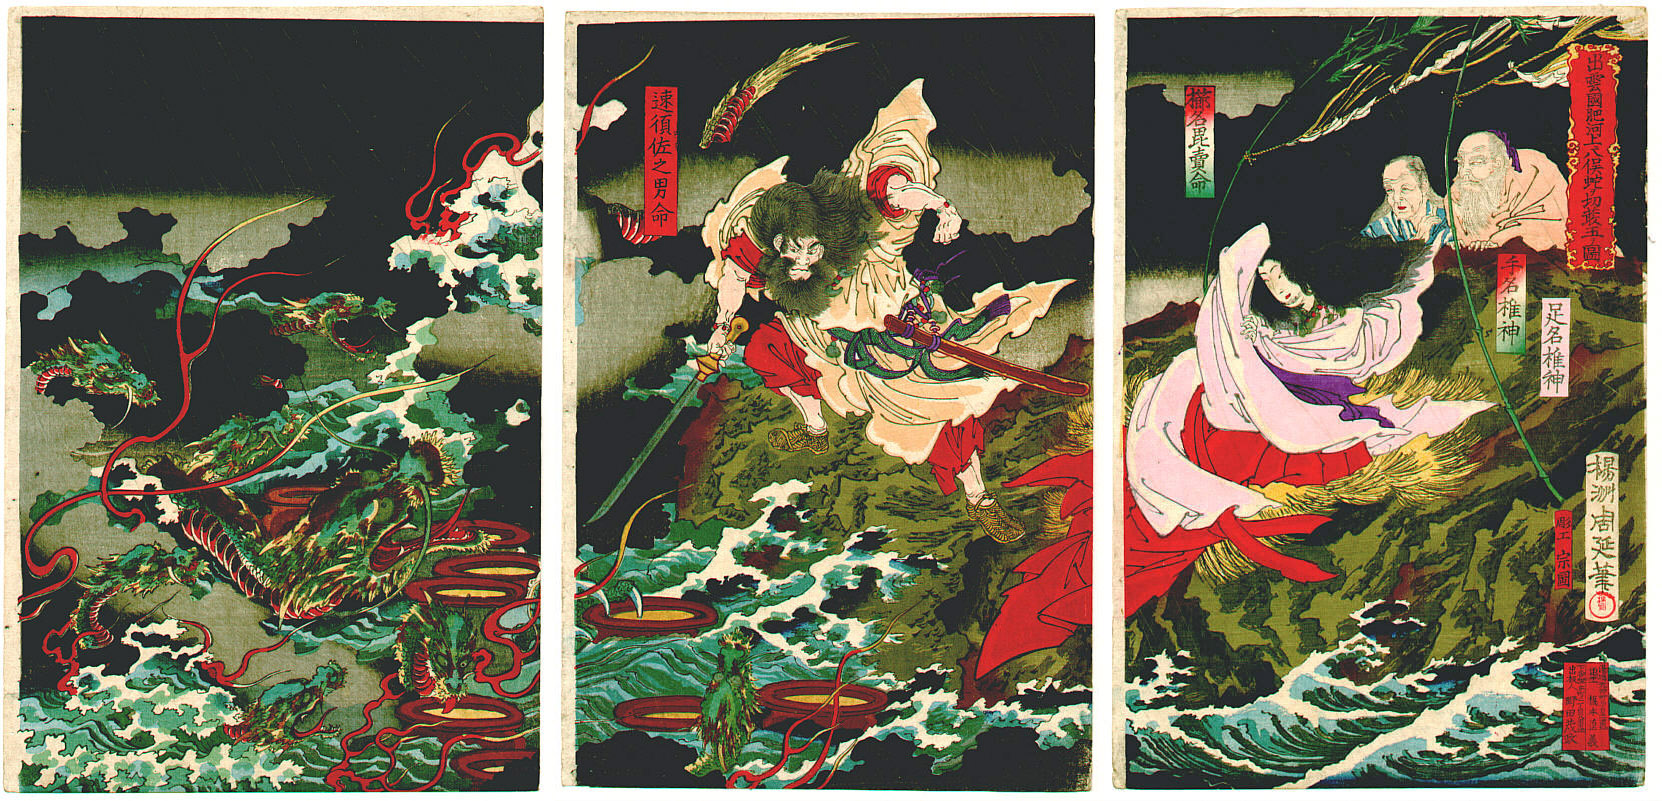 Susanoo slaying the Yamata no Orochi, by Toyohara Chikanobu